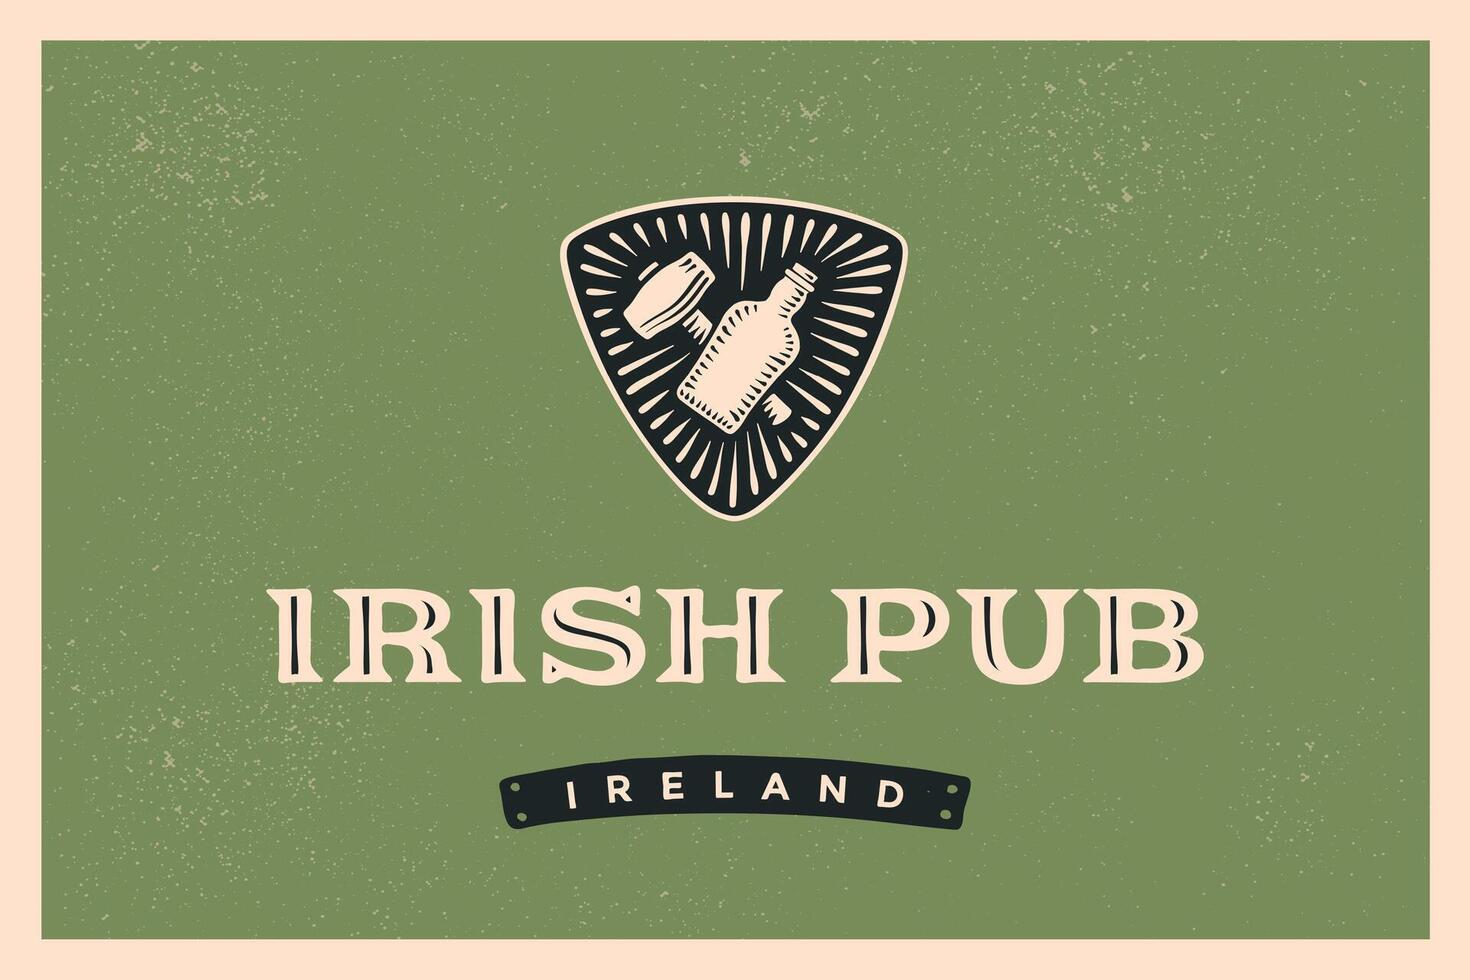 clásico retro estilizado etiqueta para irlandesa pub vector